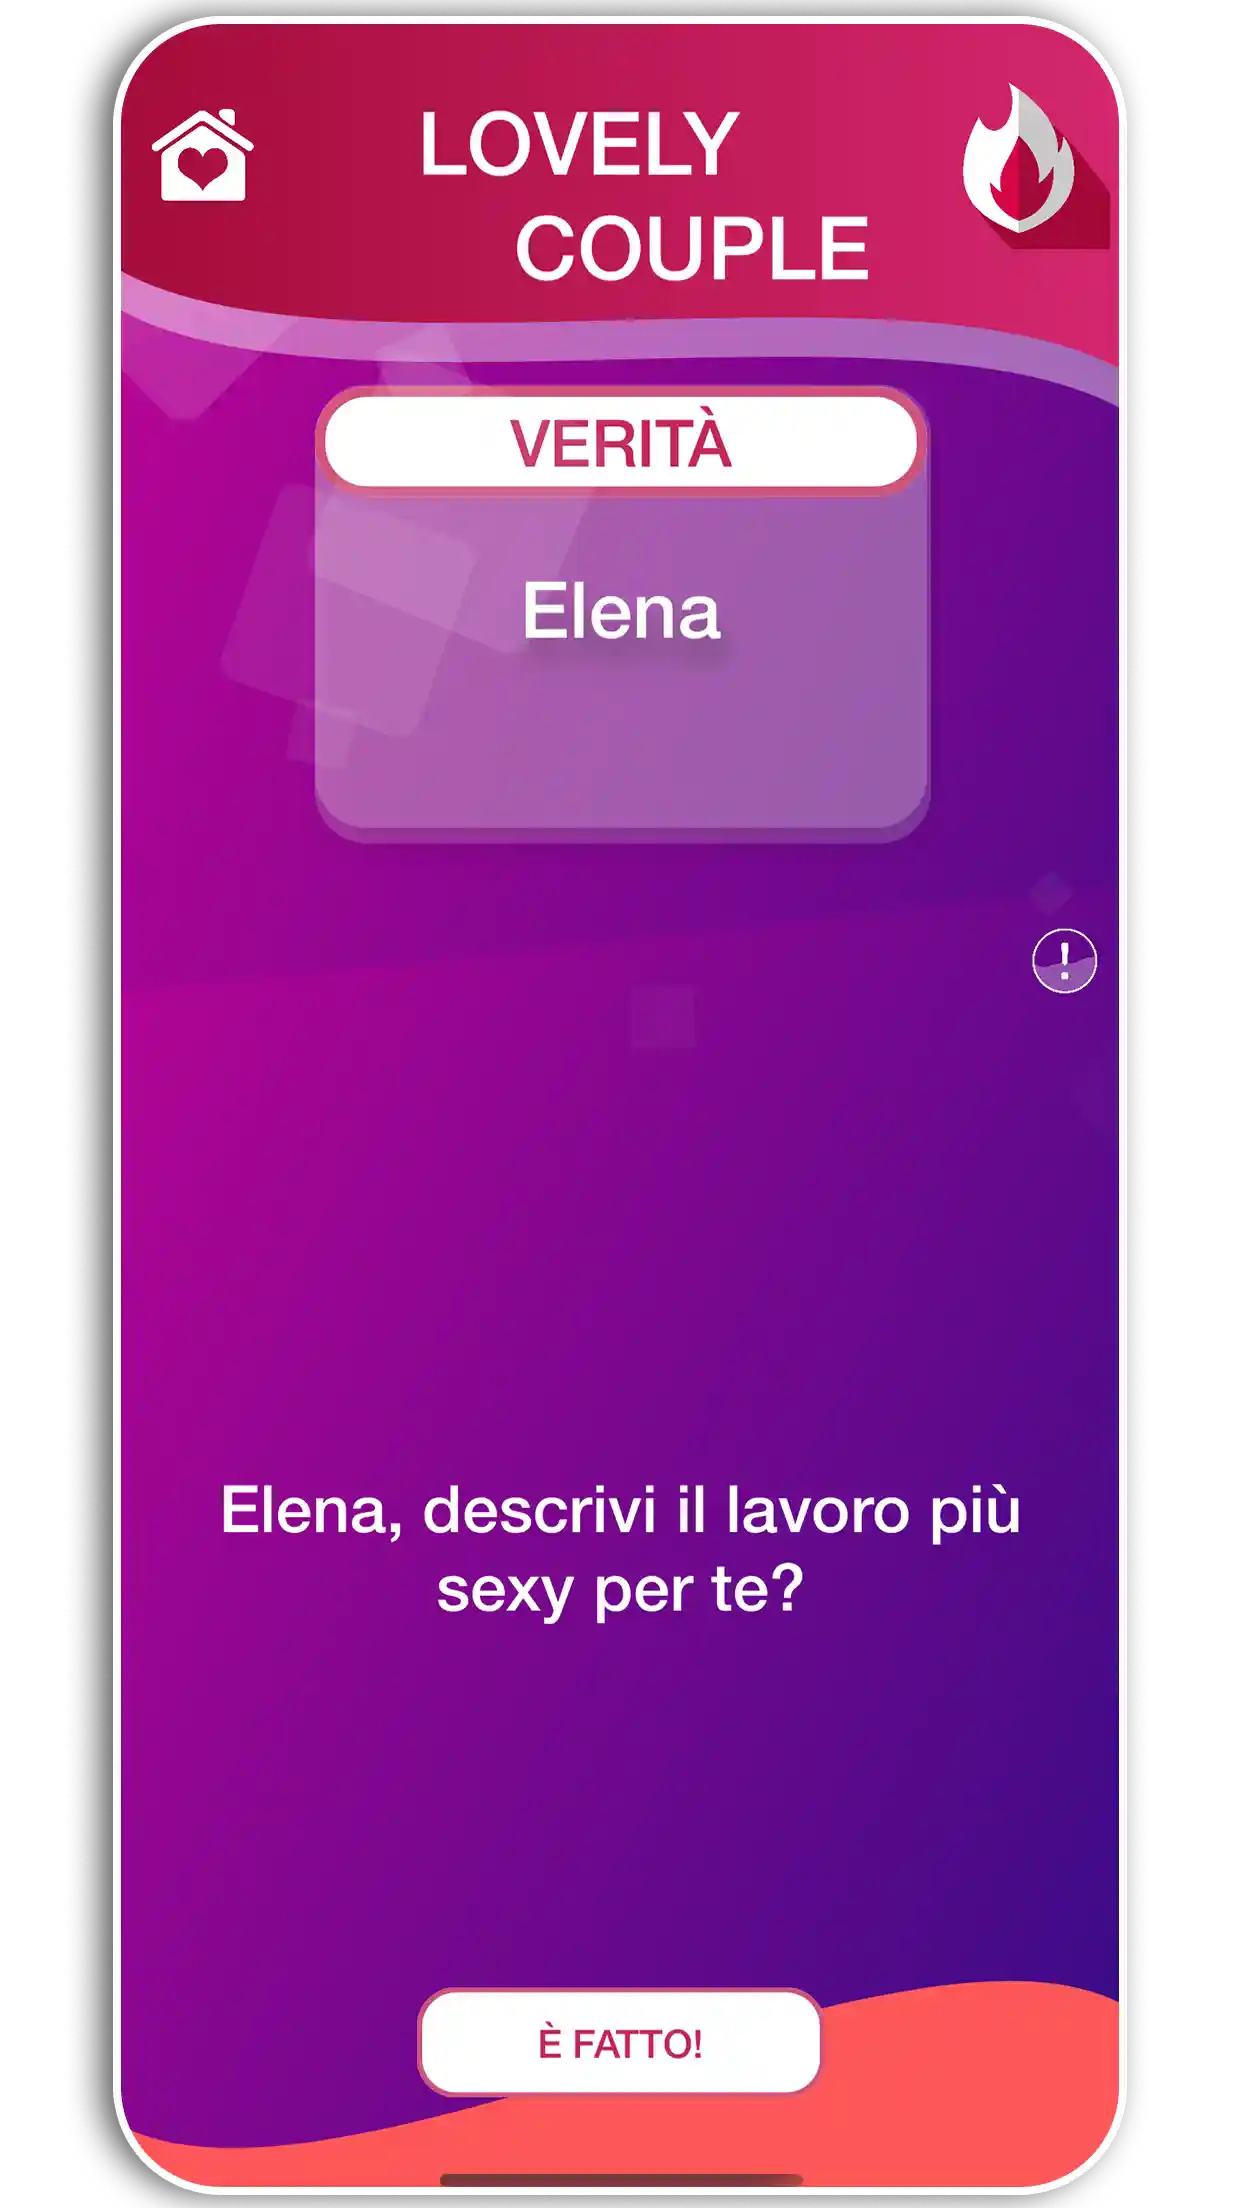 Scaricate la sfida Lovely Coppia o l'applicazione verità birichina per coppie sexy dall'Apple Store